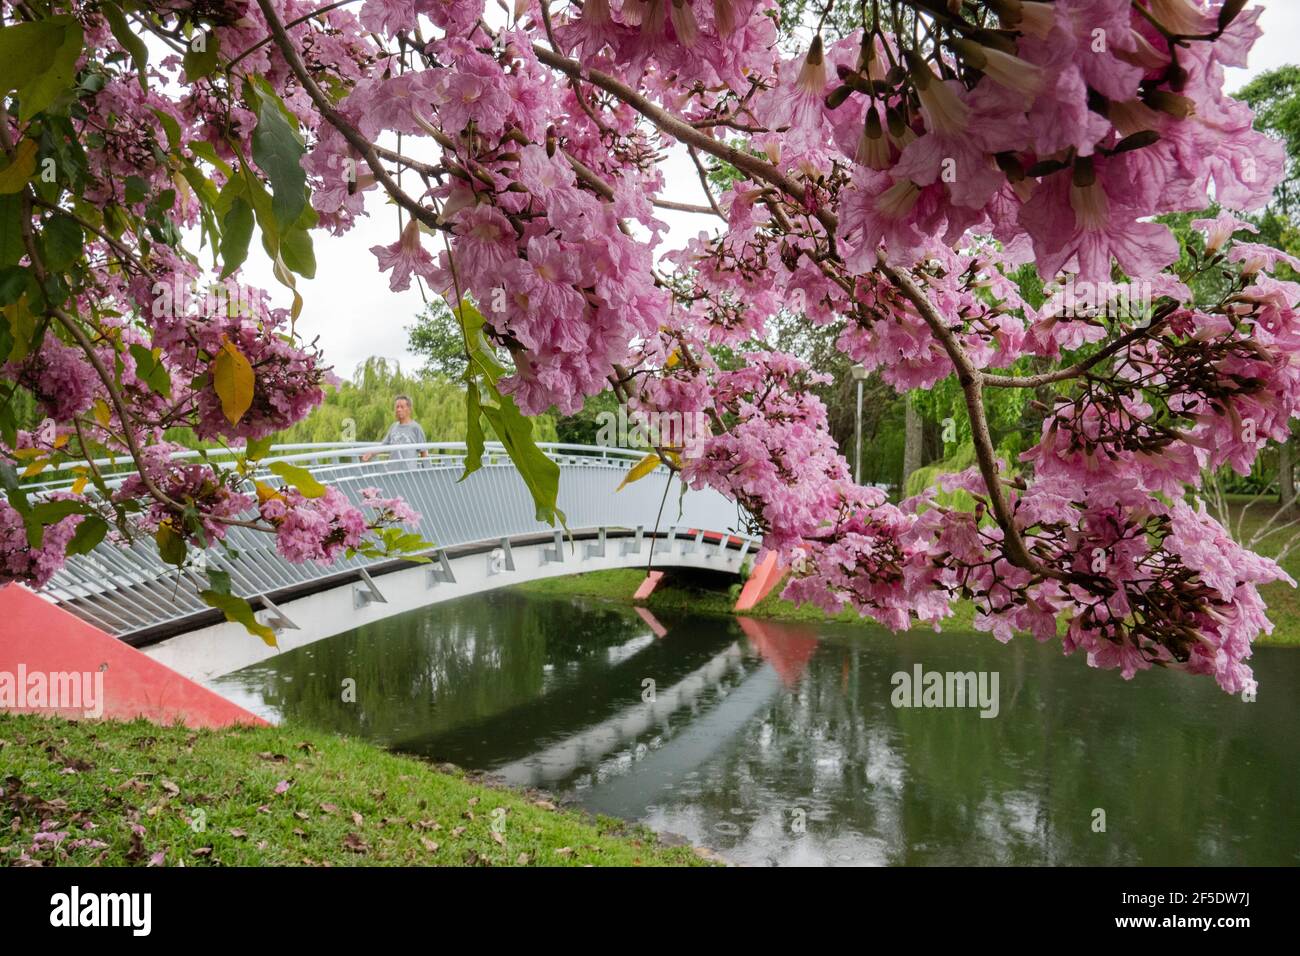 Singapour. 25 mars 2021. Des fleurs de trompettes fleurissent dans le parc Bihan-Ang Mo Kio de Singapour le 25 mars 2021. Crédit: Puis Chih Wey/Xinhua/Alay Live News Banque D'Images